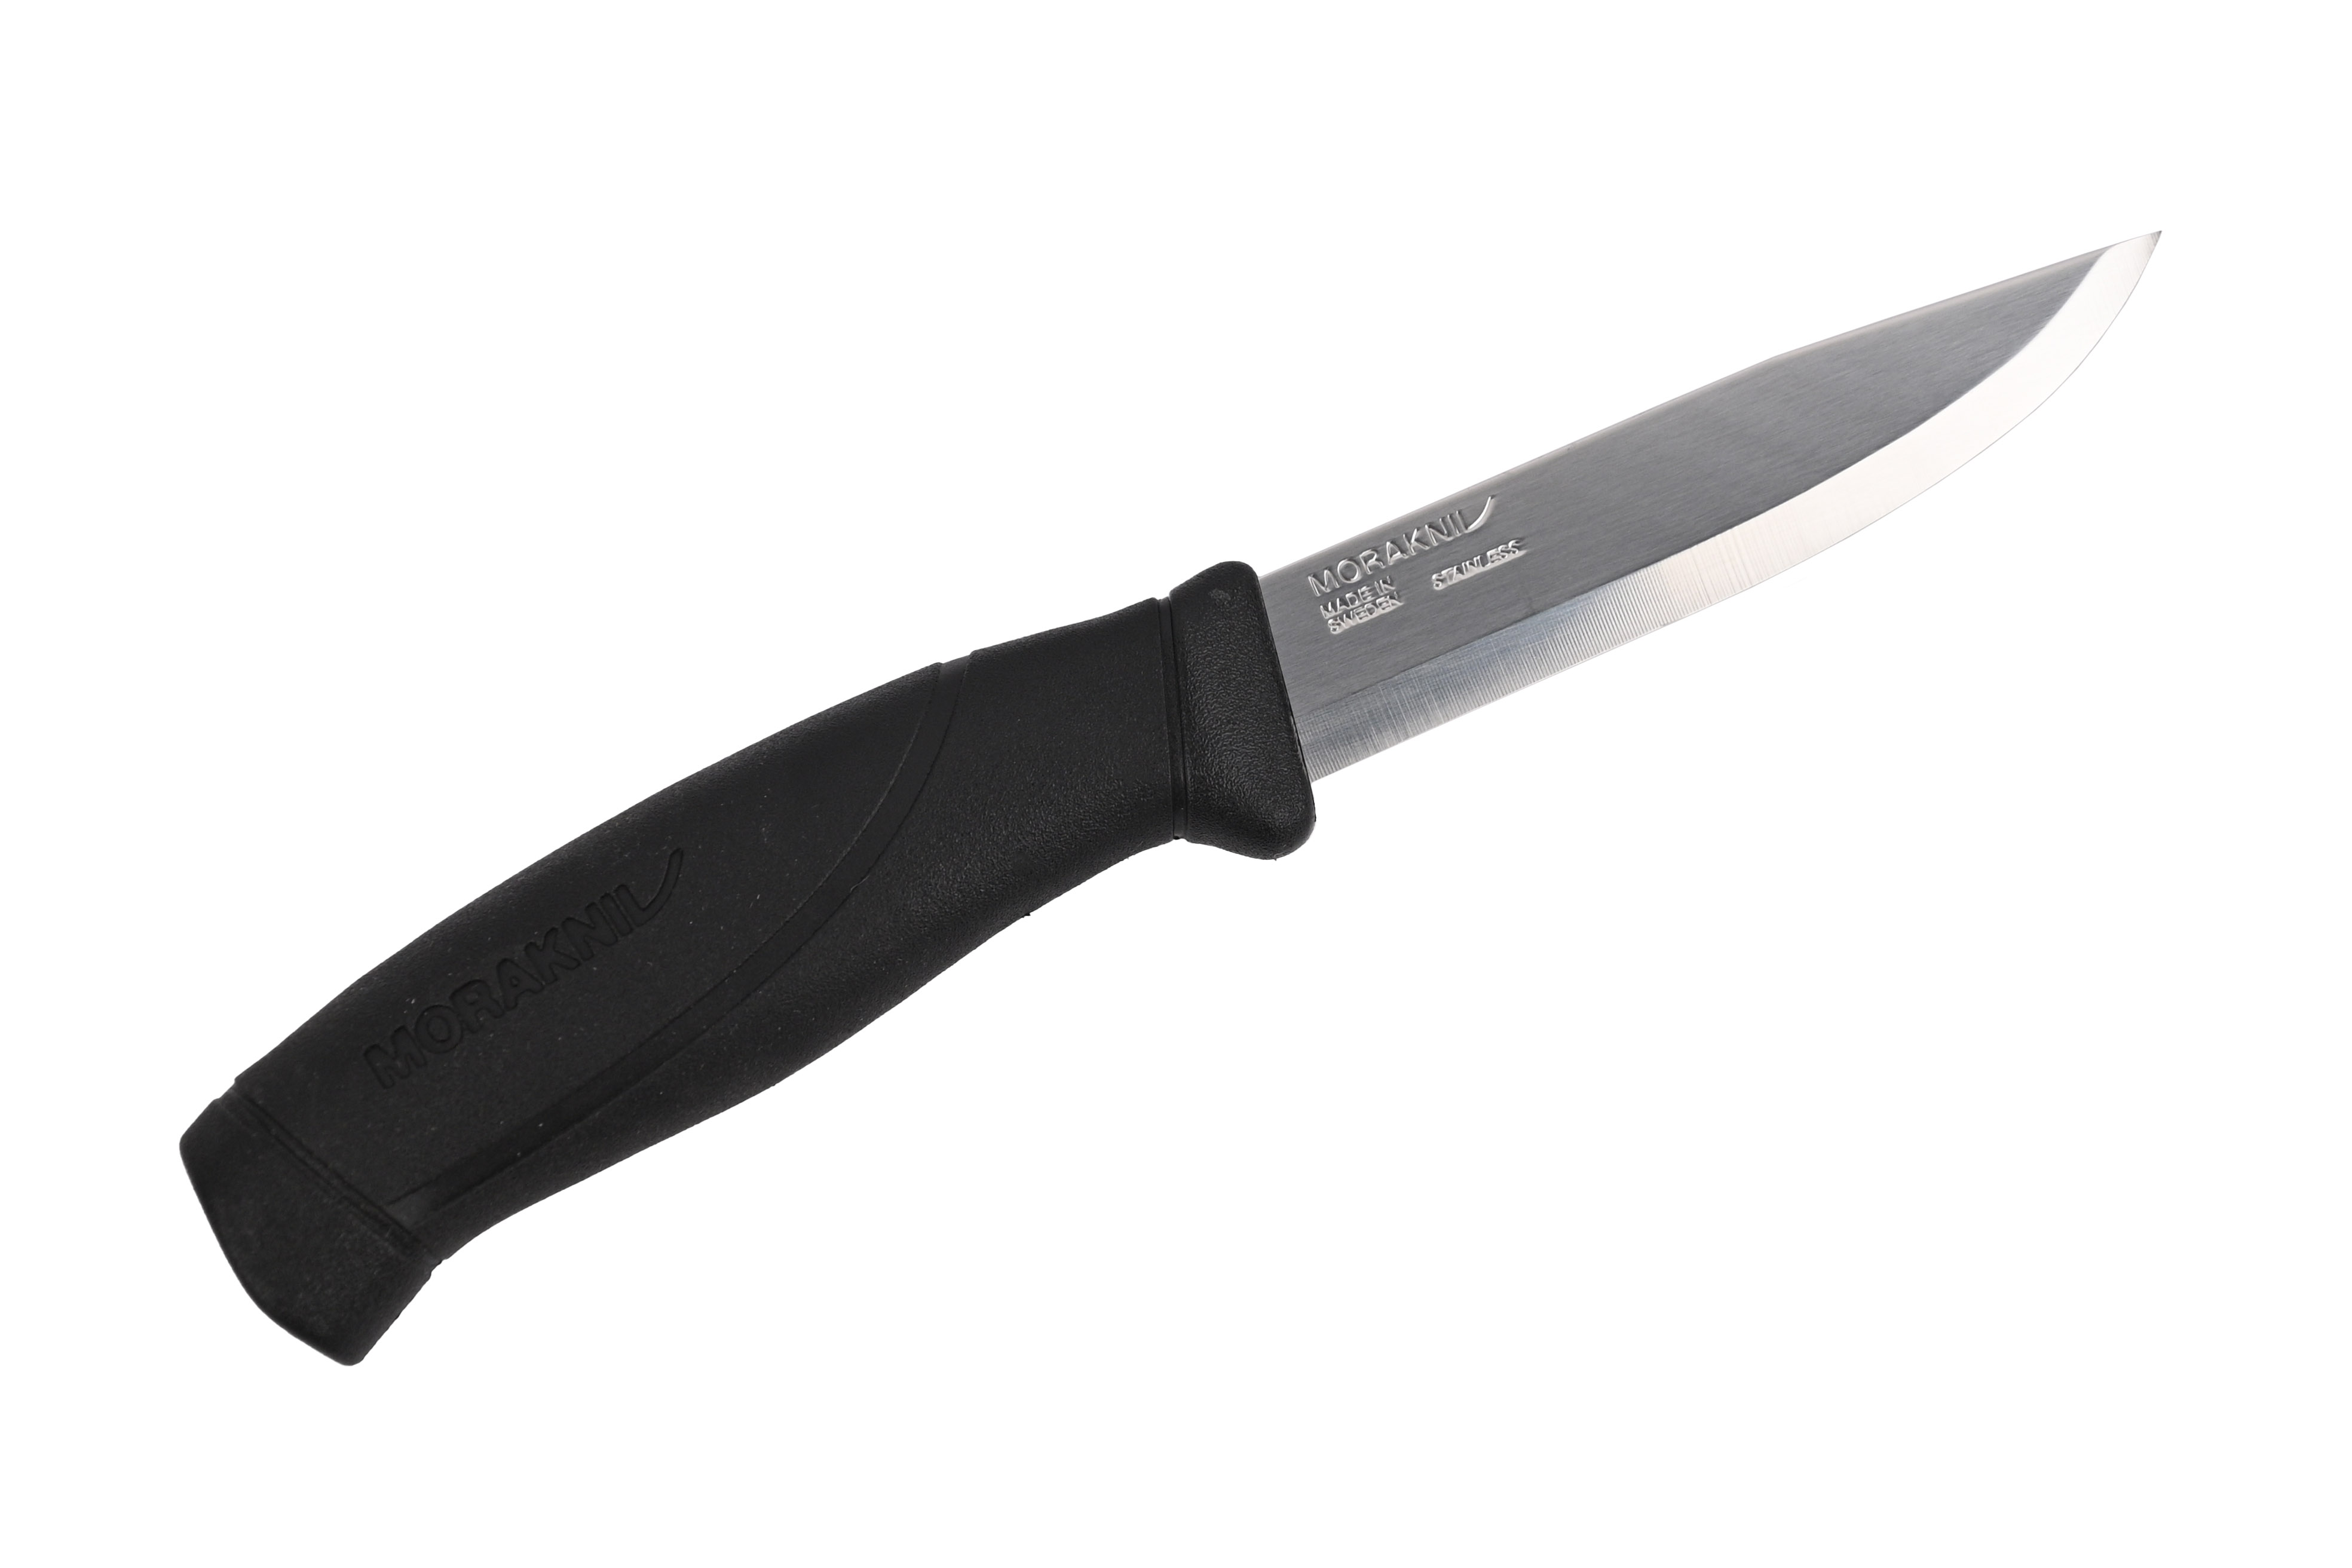 Нож Mora Companion black - фото 1